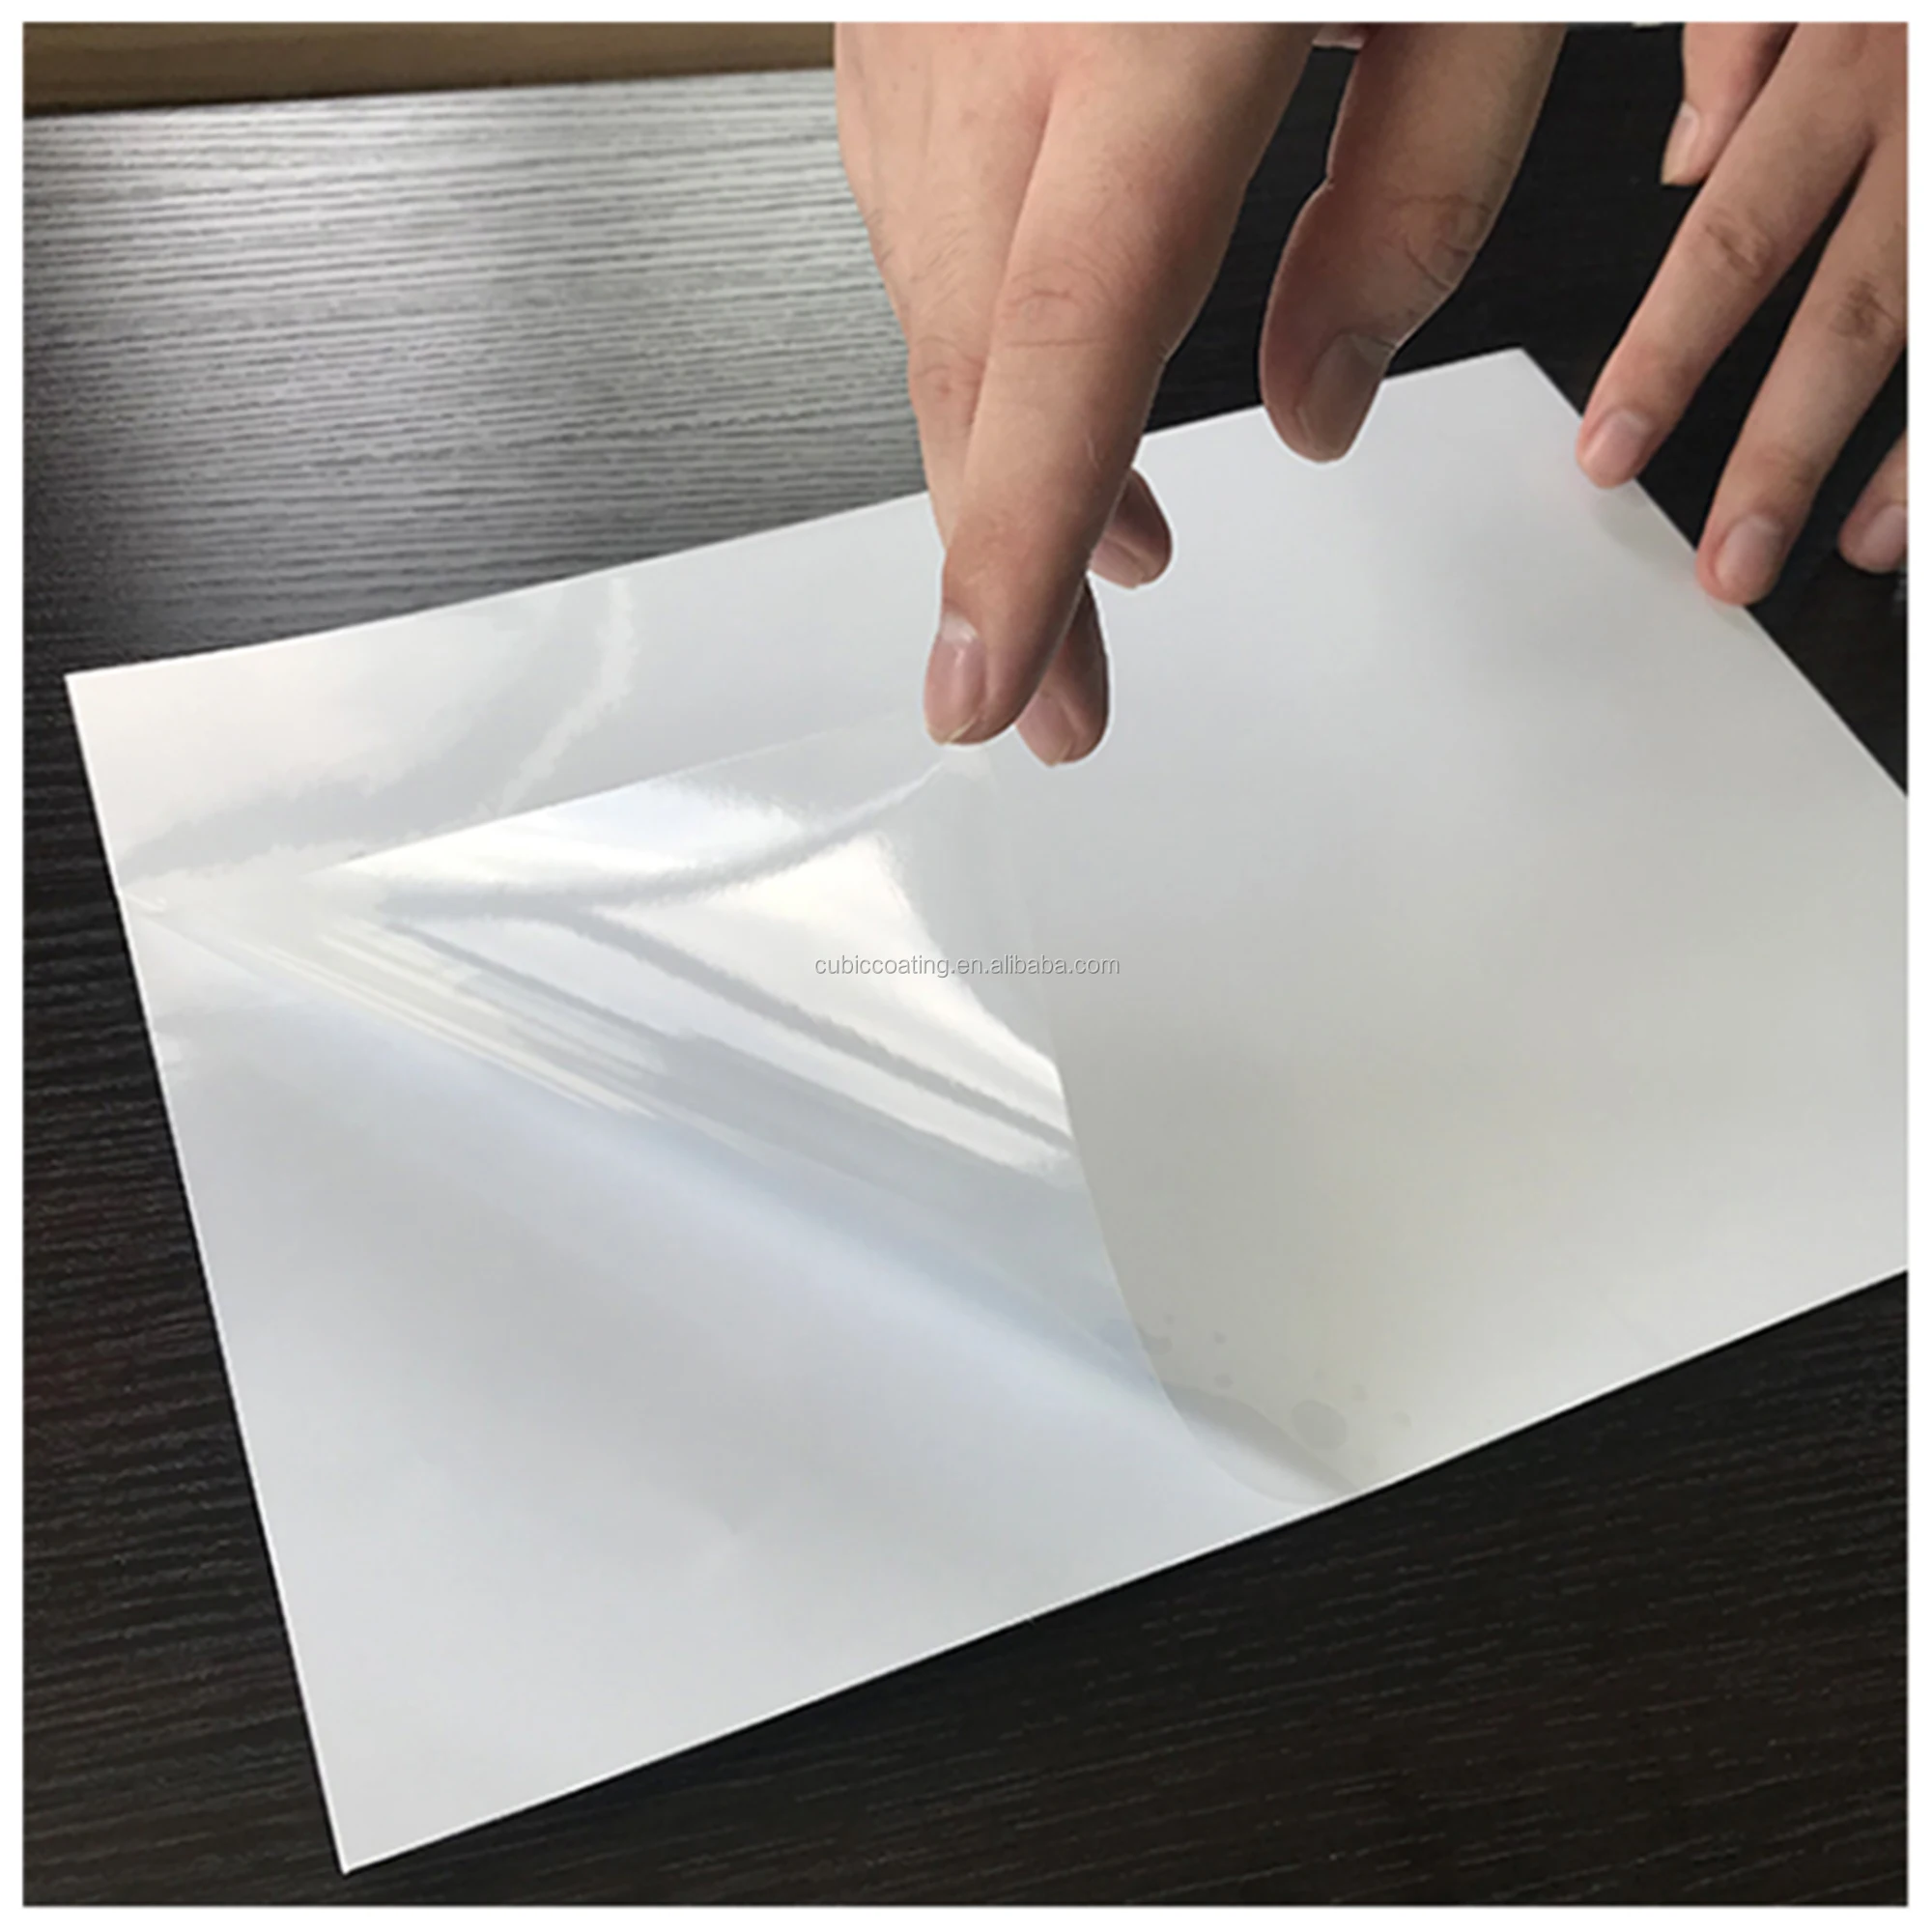 imprimibles en inyección de tinta Paquete de 15 hojas de vinilo autoadhesivas transparentes tamaño A4 